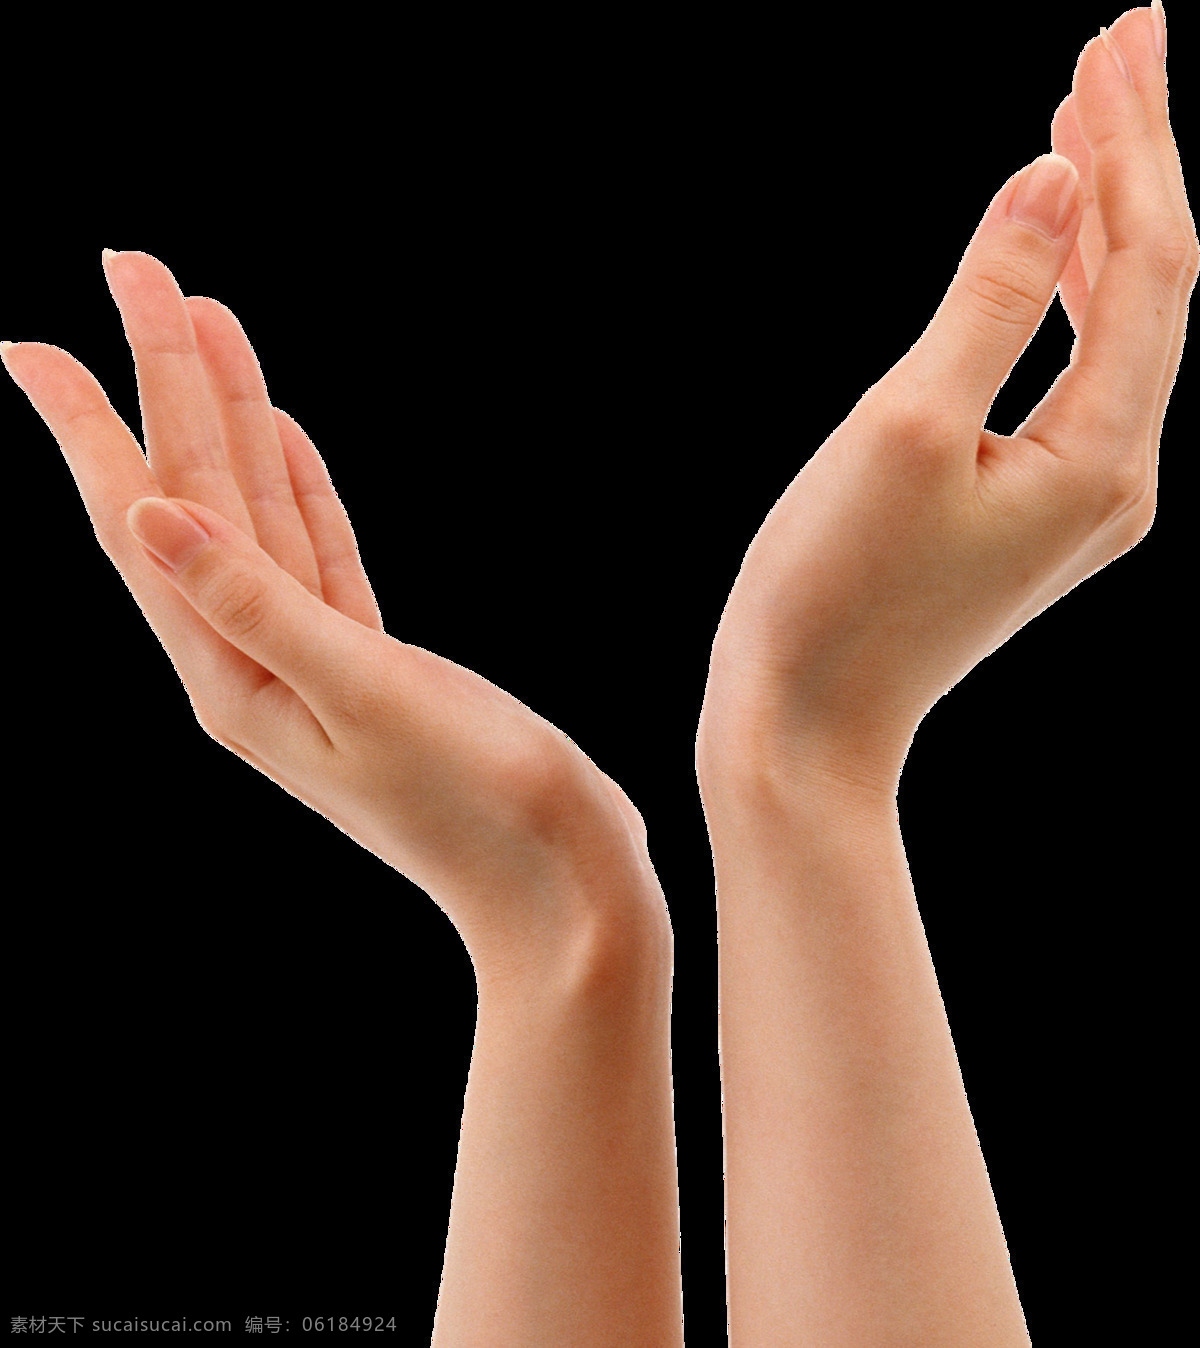 双手 接 东西 手势 免 抠 透明 手指方向图片 指向手势 胜利手势 超赞手势 加油手势 棒棒哒手势 打叉手势 手语图片 手势图片素材 手语图片素材